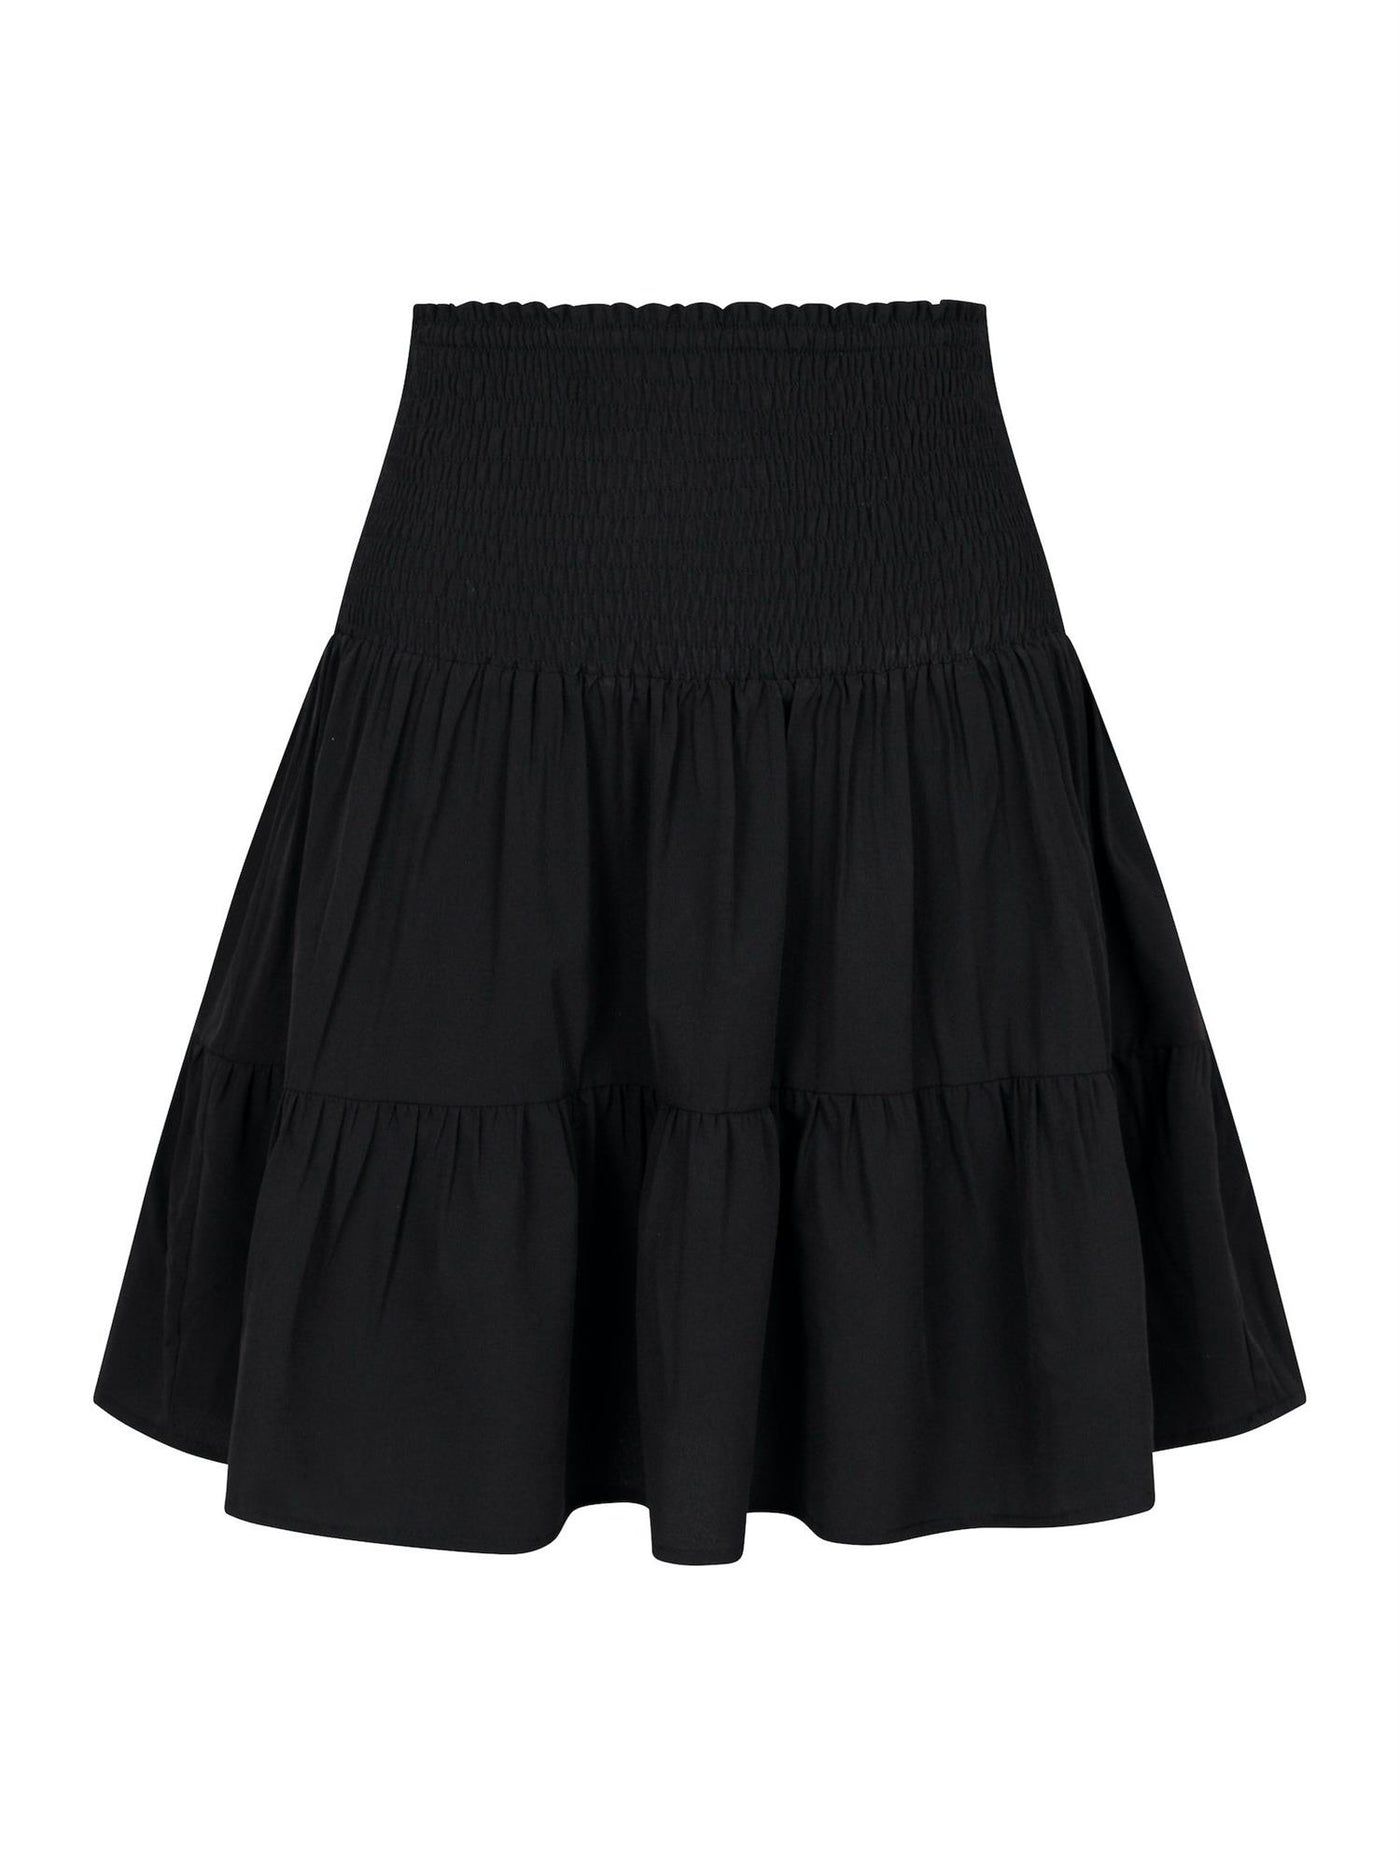 Cordova R Skirt Black